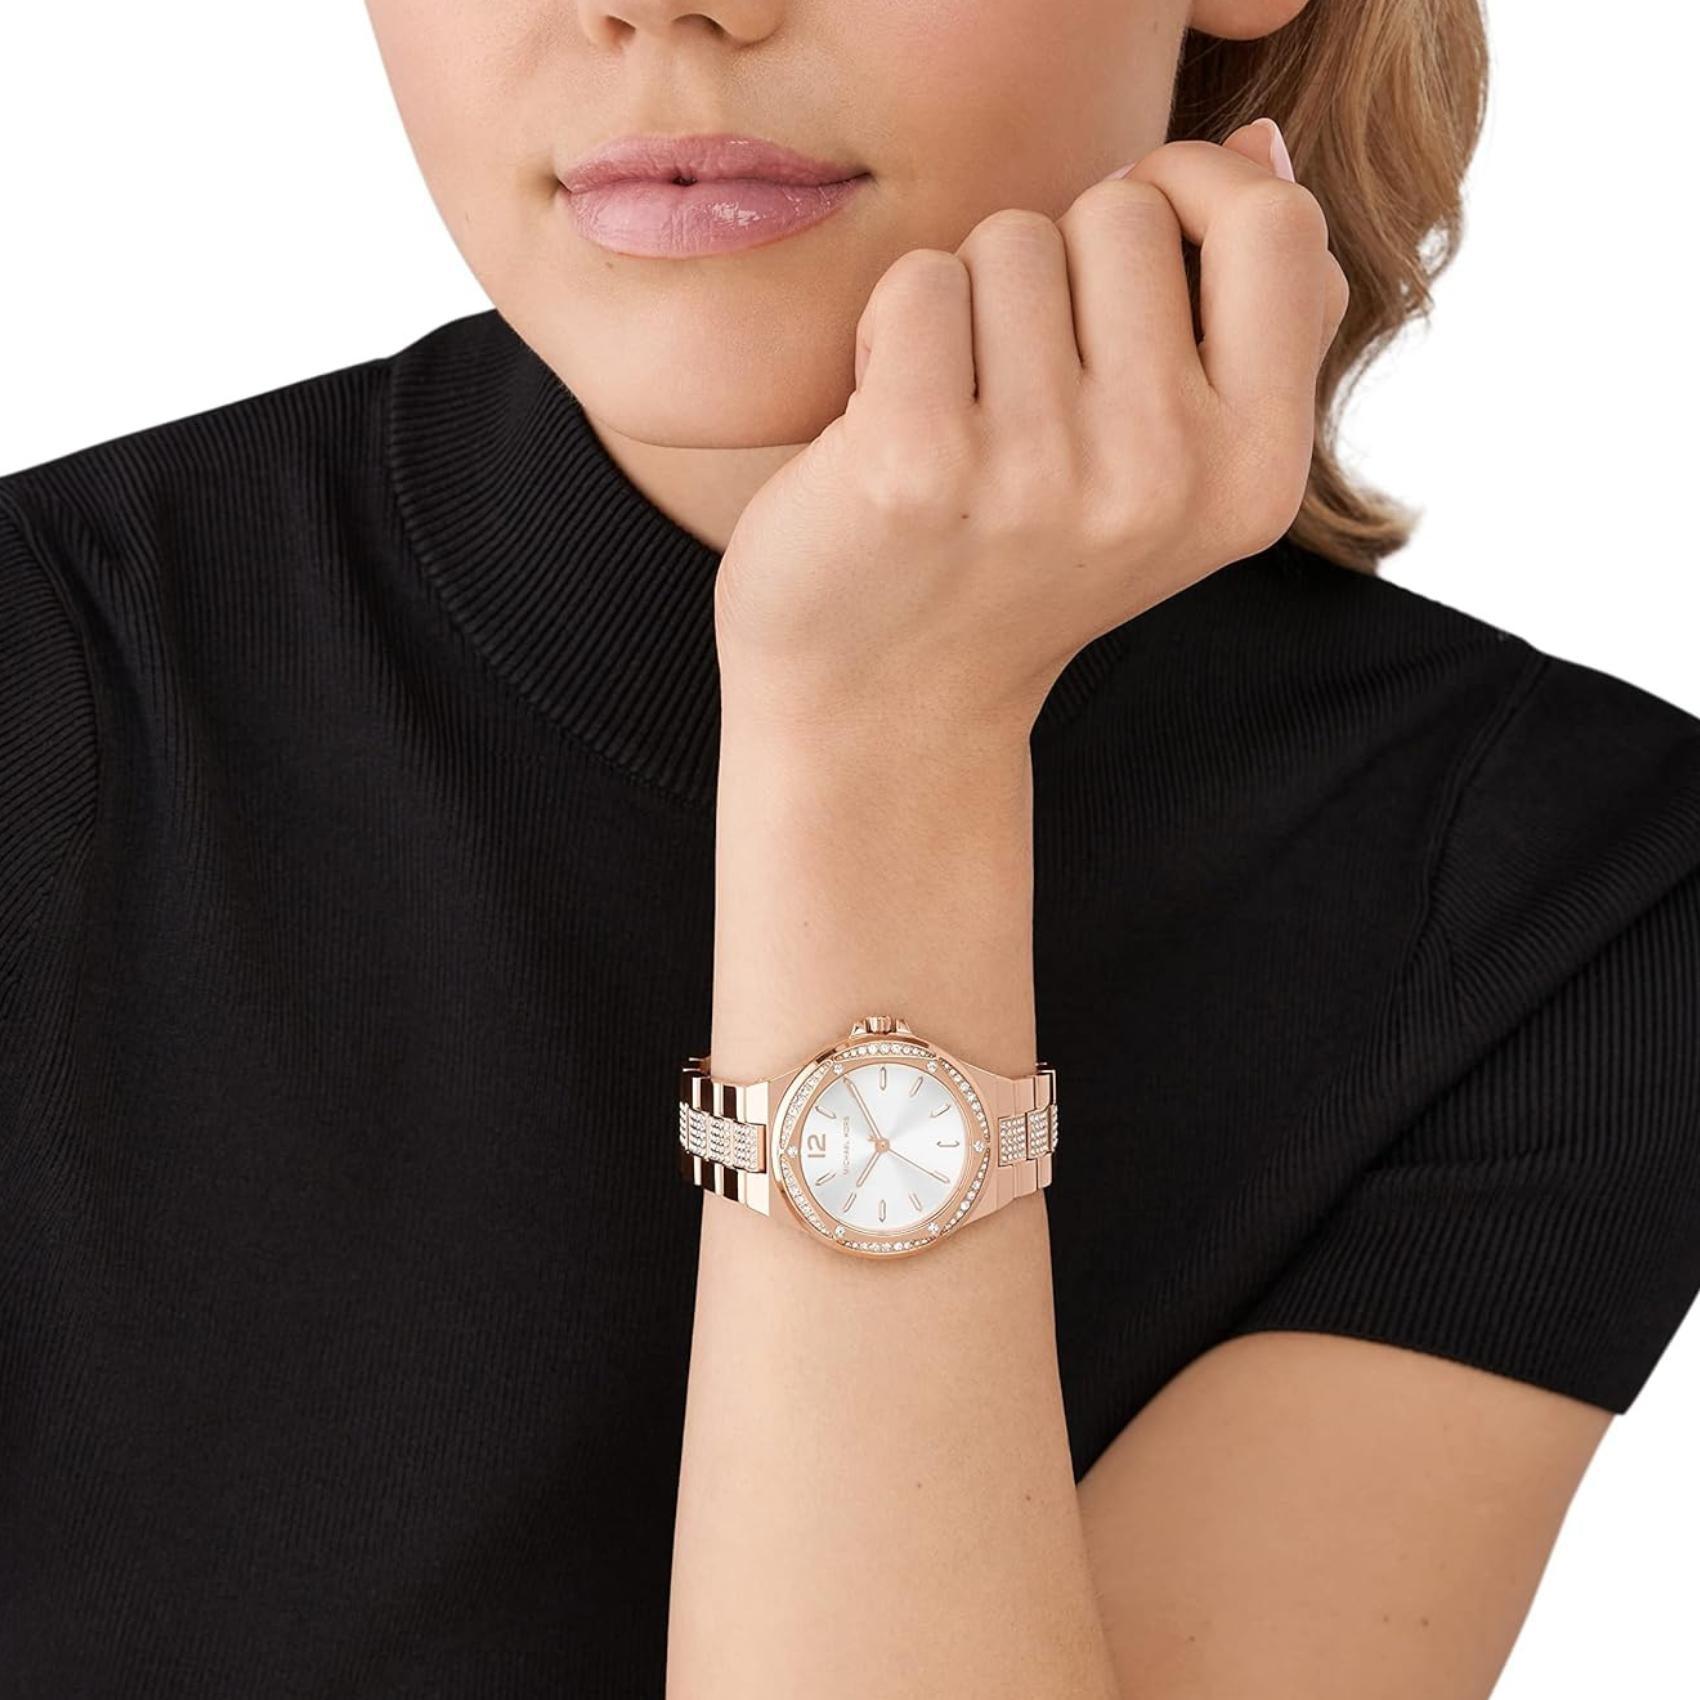 Γυναικείο ρολόι Michael Kors Lennox MK7362 με ροζ χρυσό ατσάλινο μπρασελέ, λευκό καντράν και στρογγυλό στεφάνι 37mm με ζιργκόν.